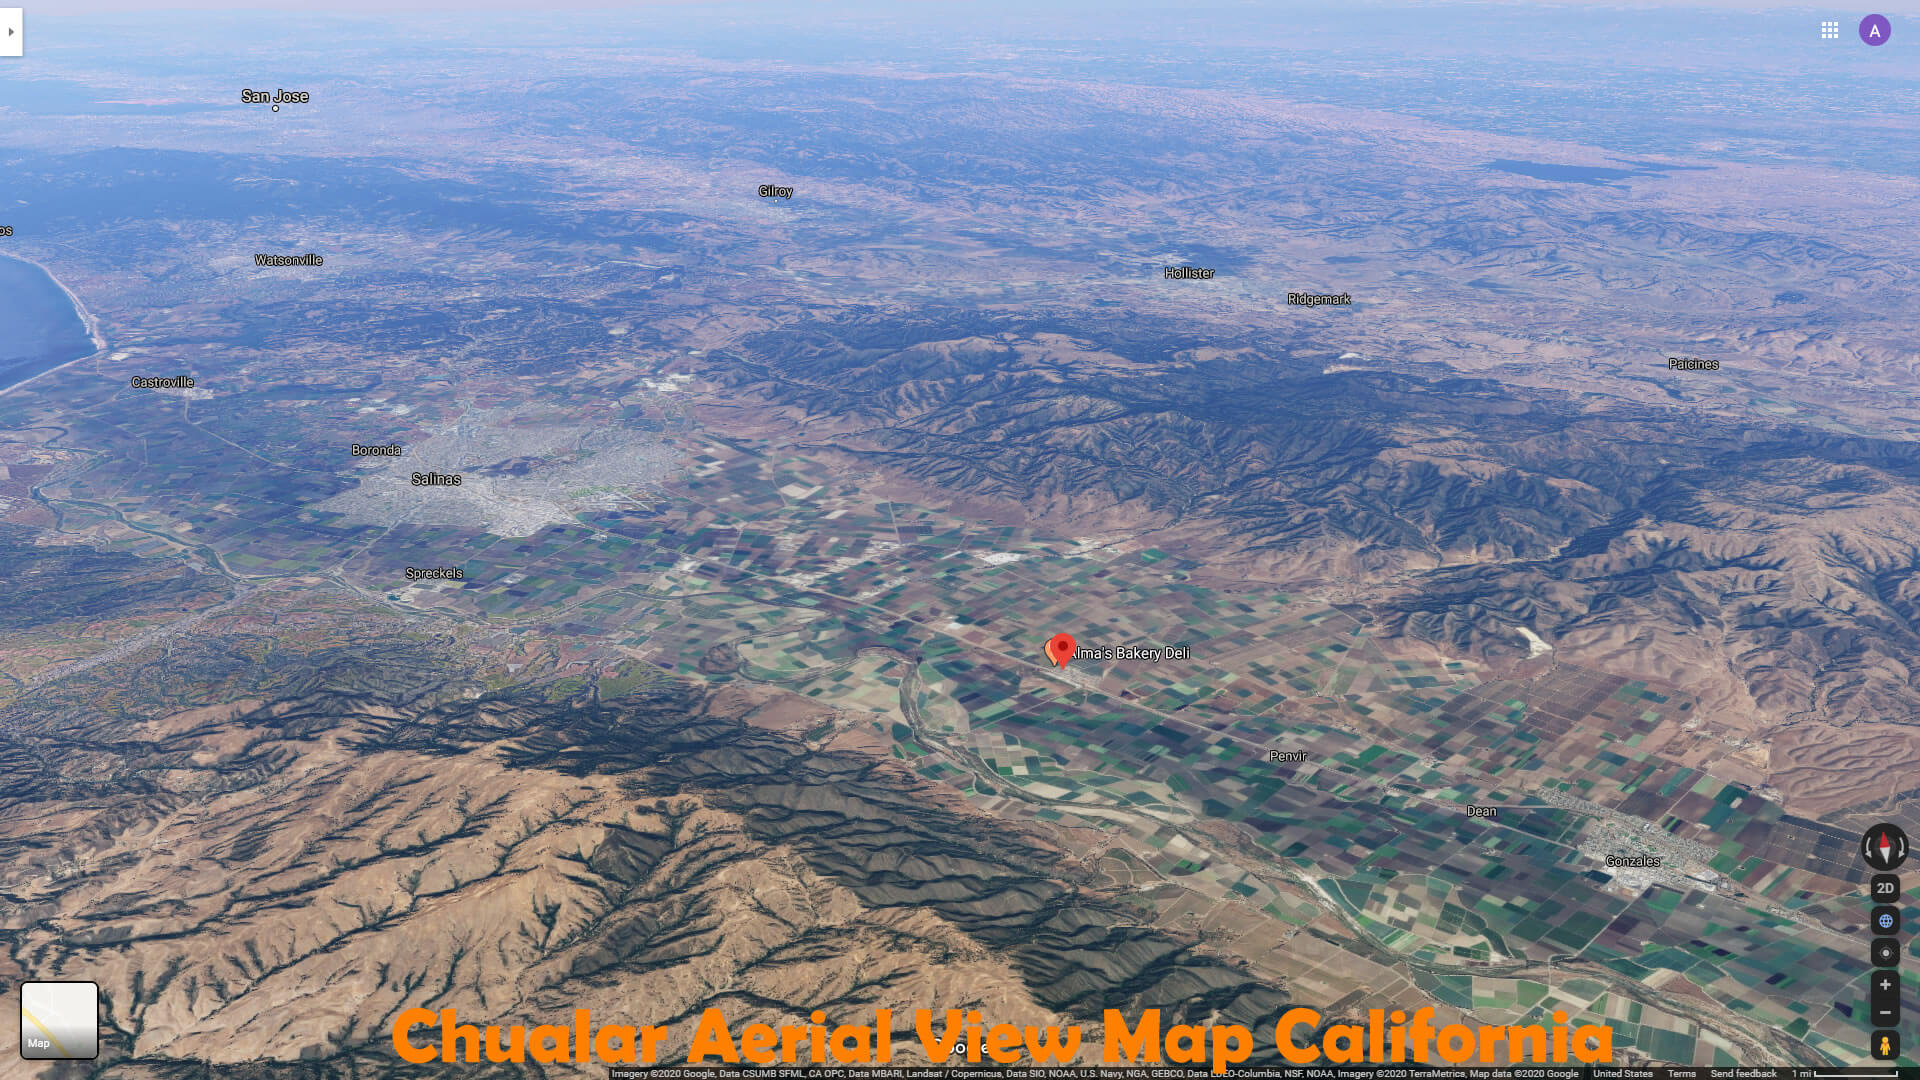 Chualar Aerial View Map California